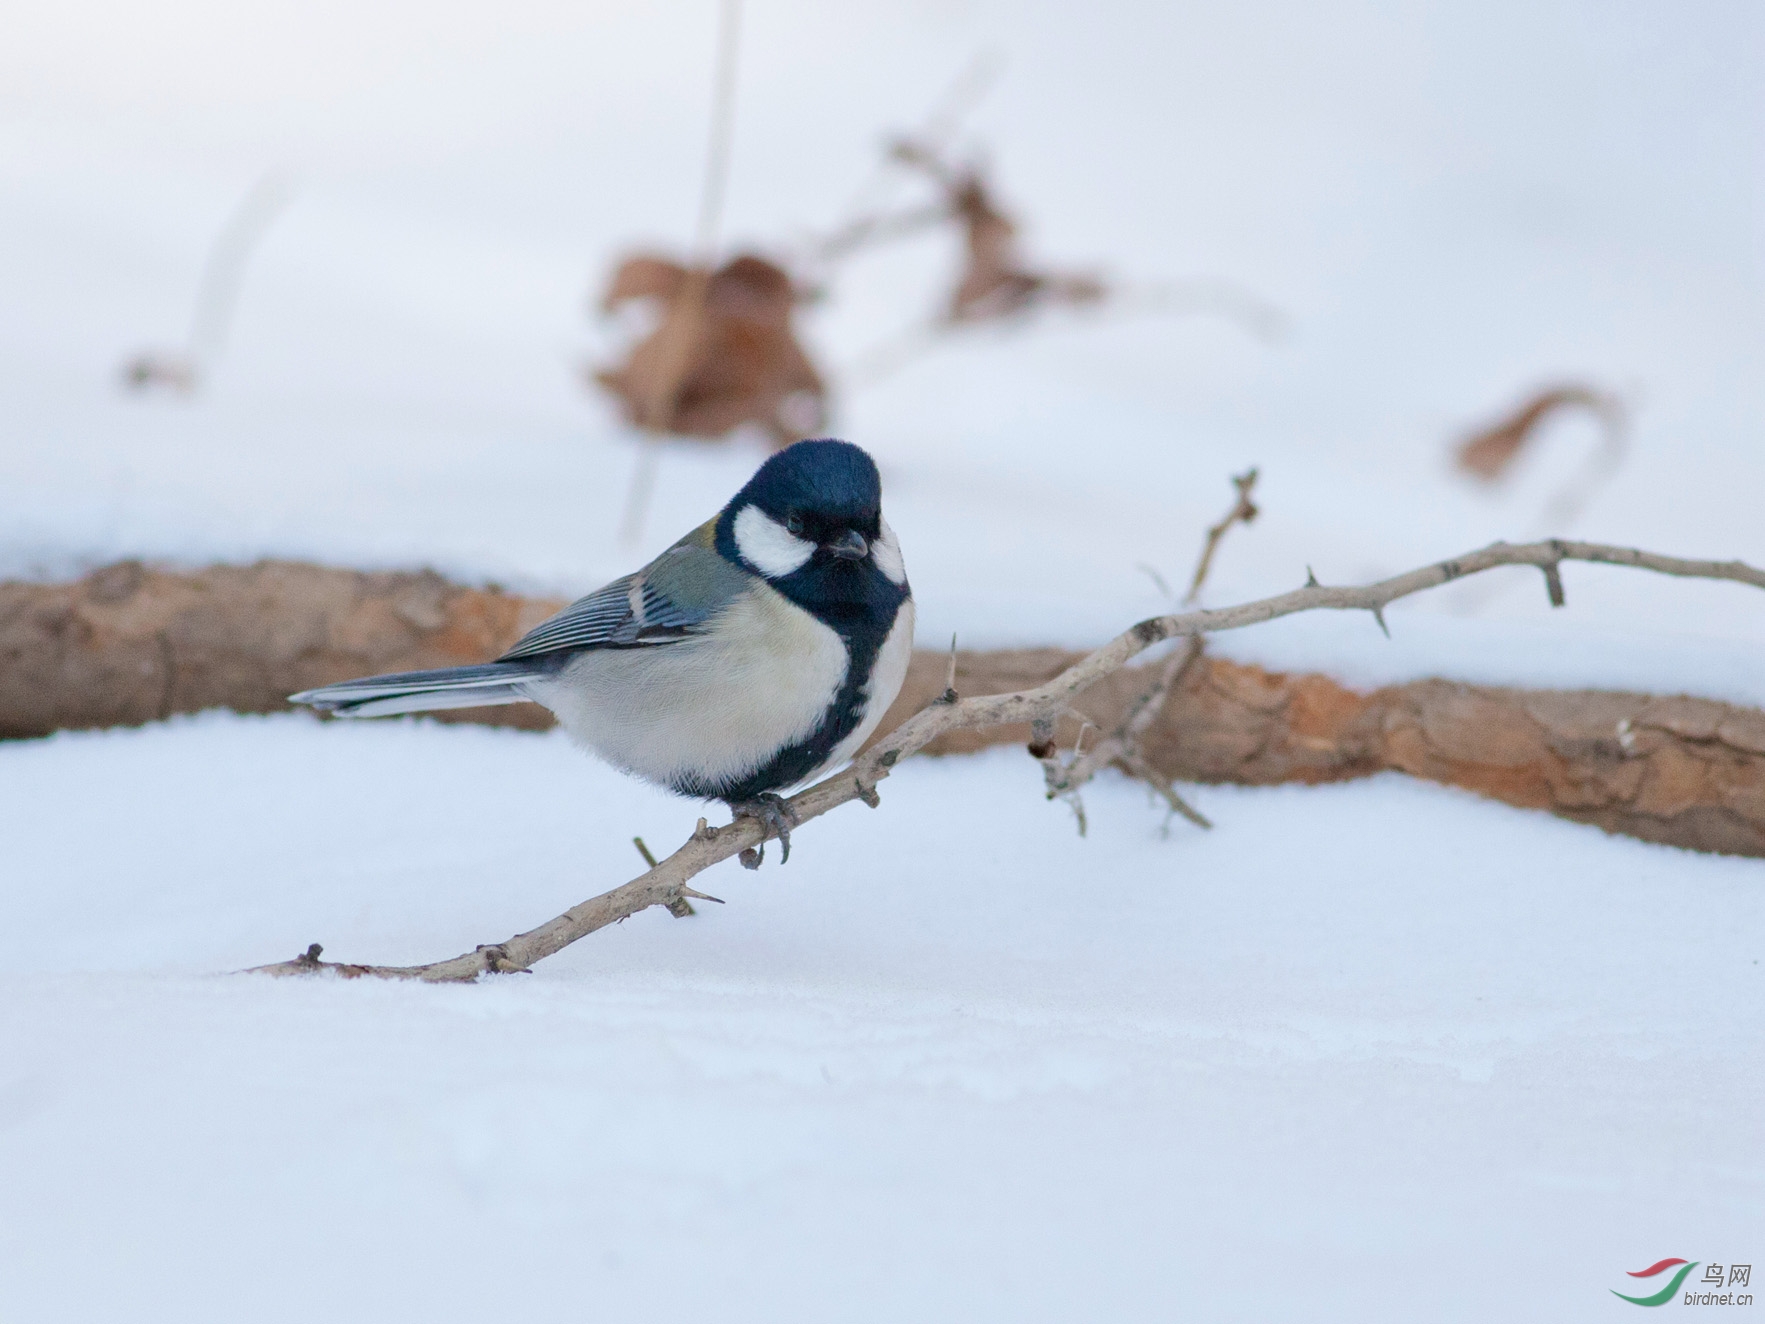 下雪了,去看看雪后小鸟,该走的都走了,看到的都是留鸟了.